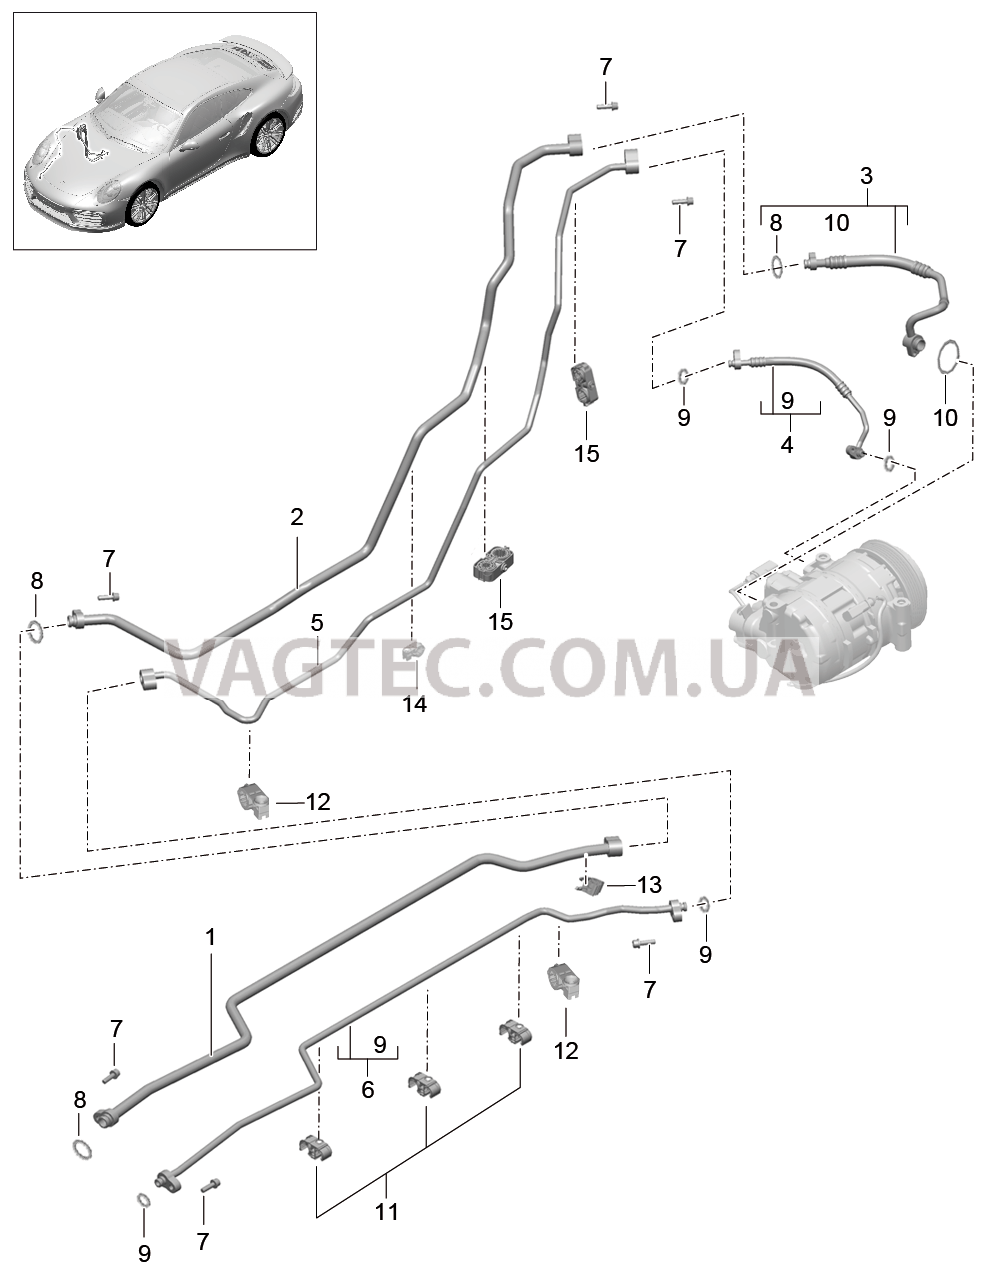 813-027 Канал хладагента, Днище кузова, и, Задняя подвеска, 2. поколение для PORSCHE Porsche991Turbo 2014-2017